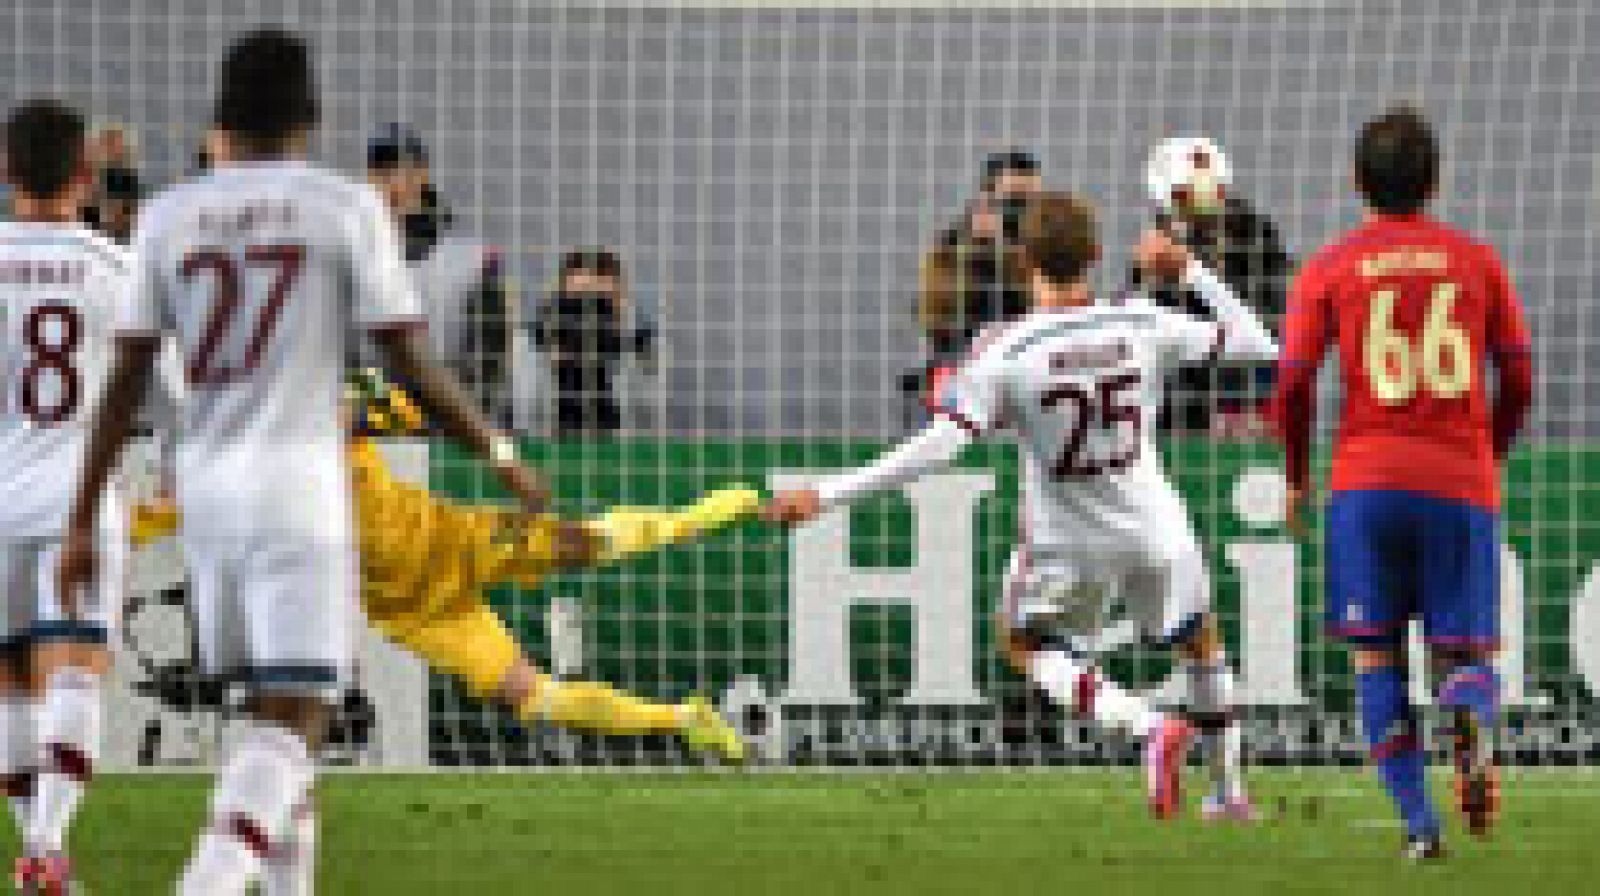 El Bayern Múnich de Pep Guardiola derrotó al CSKA Moscú (0-1) con un solitario gol de penalti de Müller y mucha posesión, pero con poca profundidad en ataque ante un rival que dispuso de ocasiones claras y que mereció un mejor resultado.